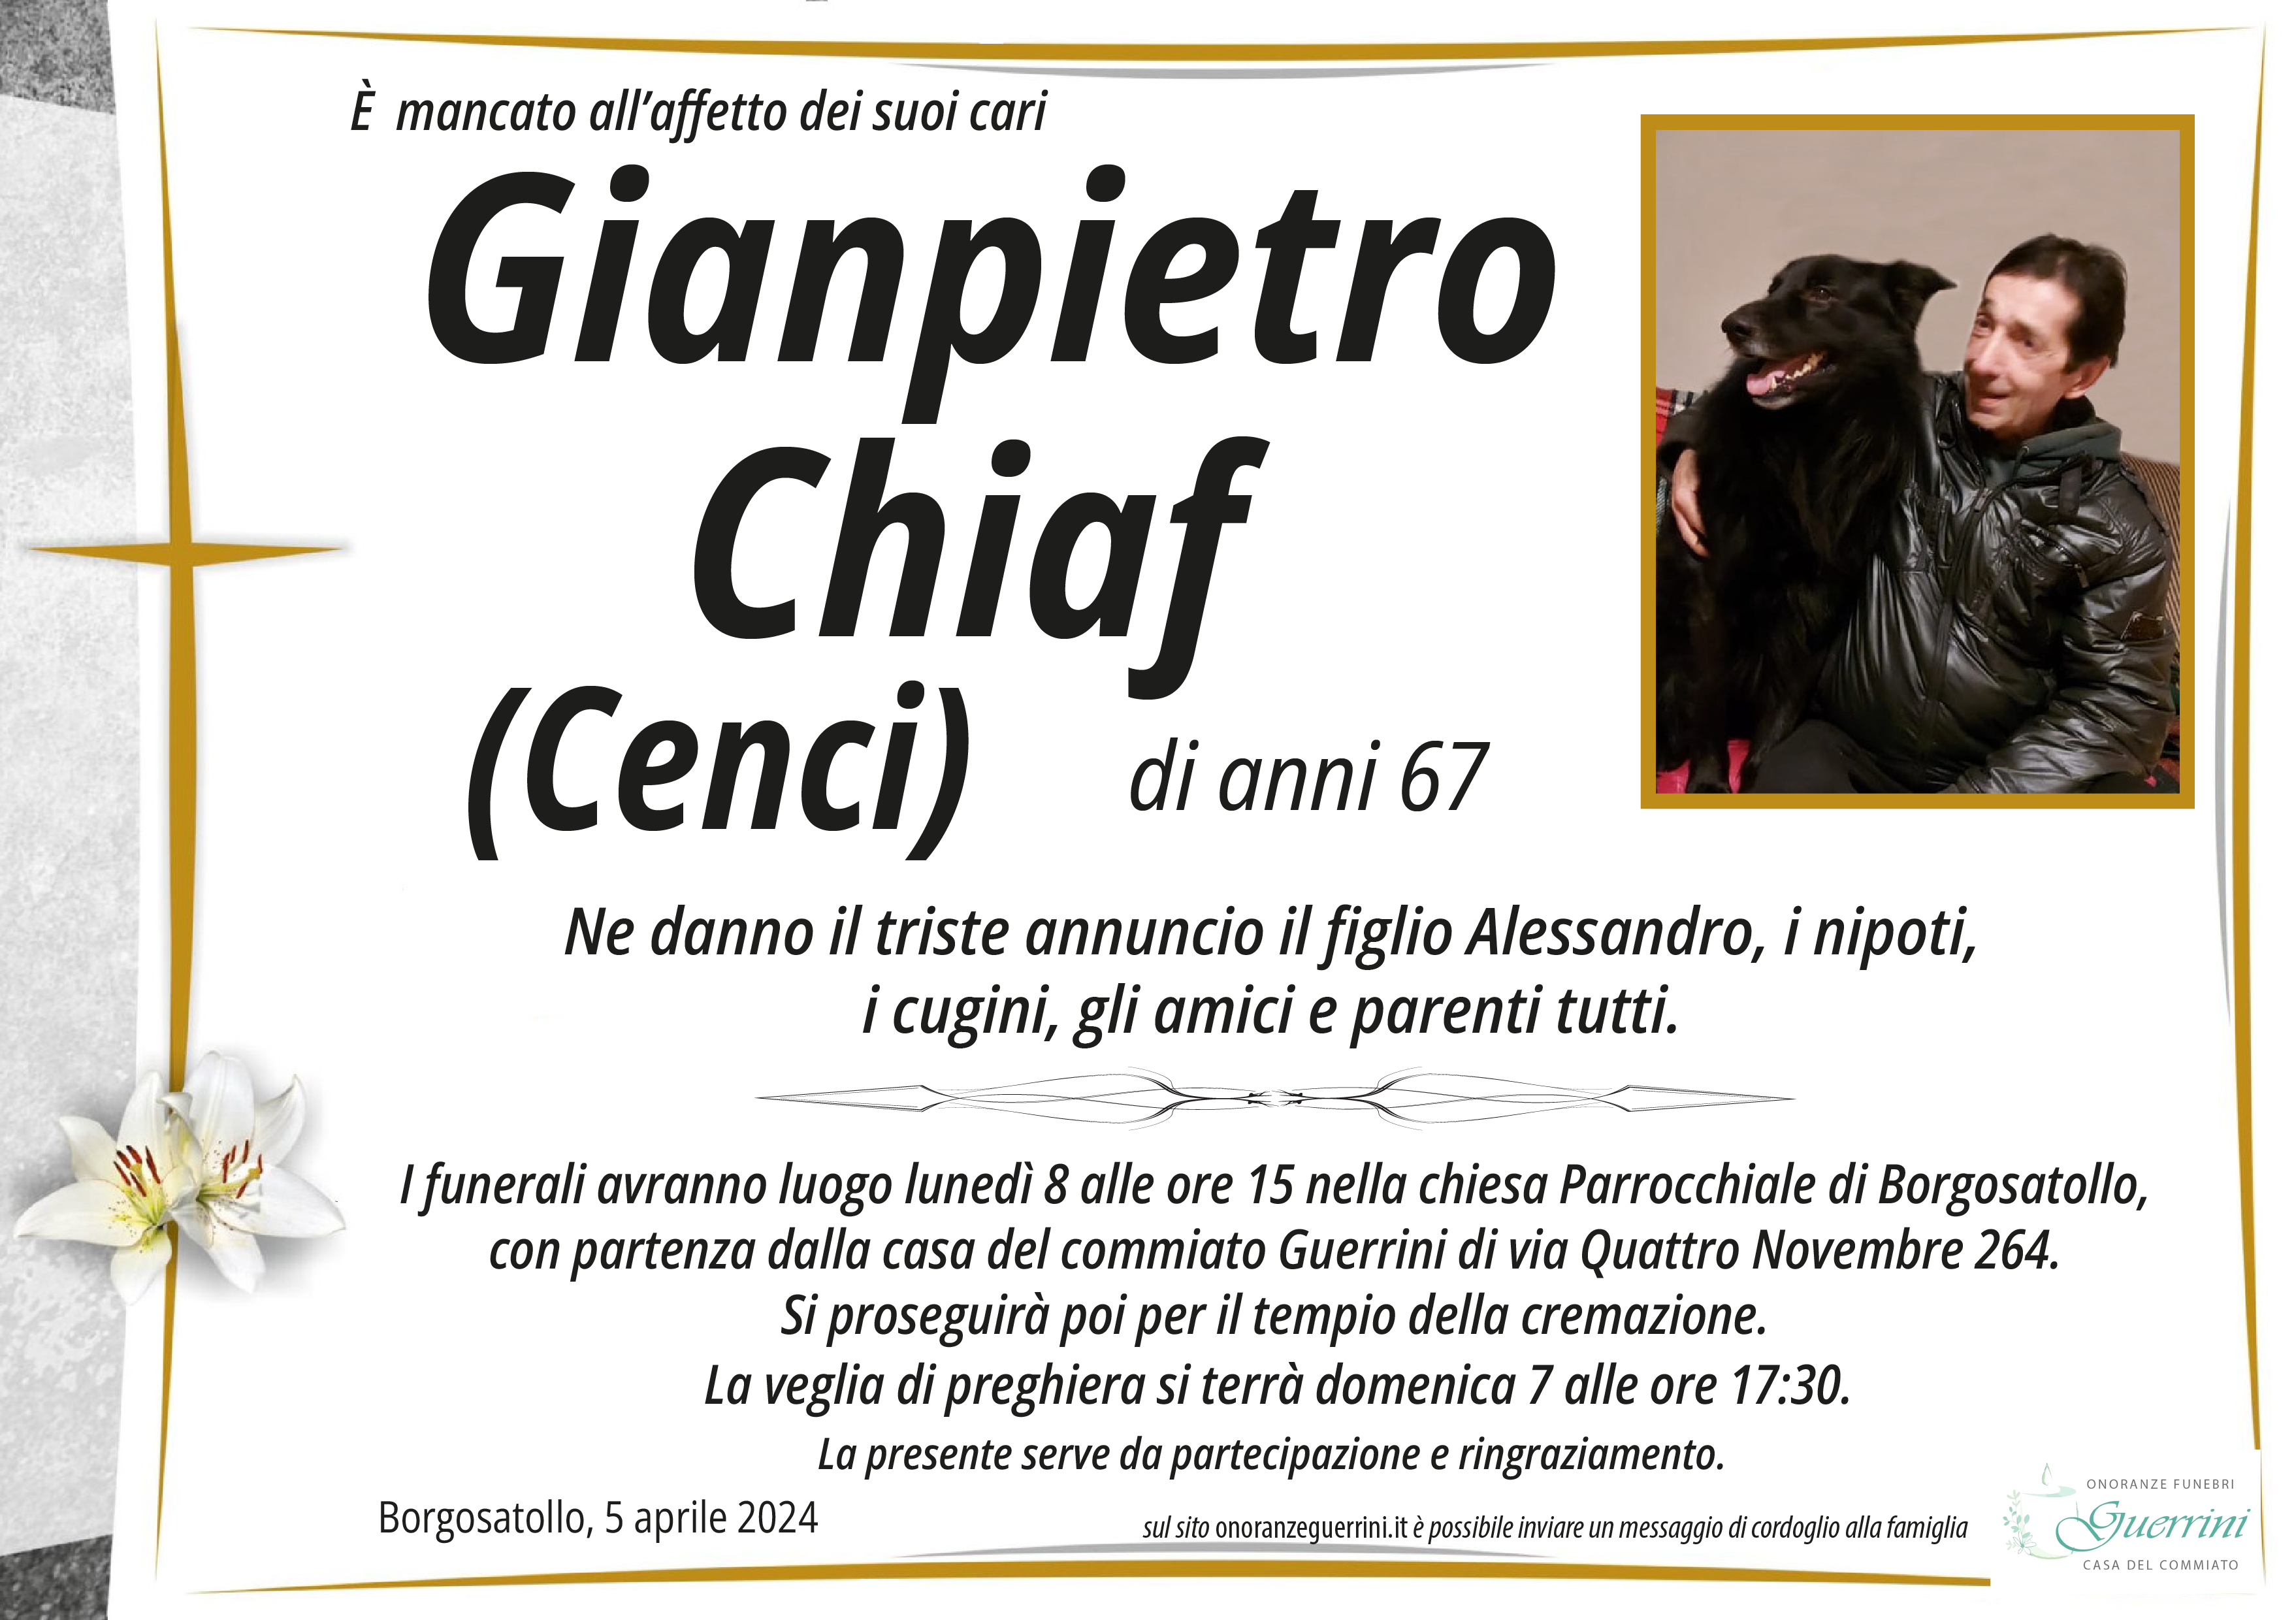 Al momento stai visualizzando Gianpietro Chiaf (Cenci)